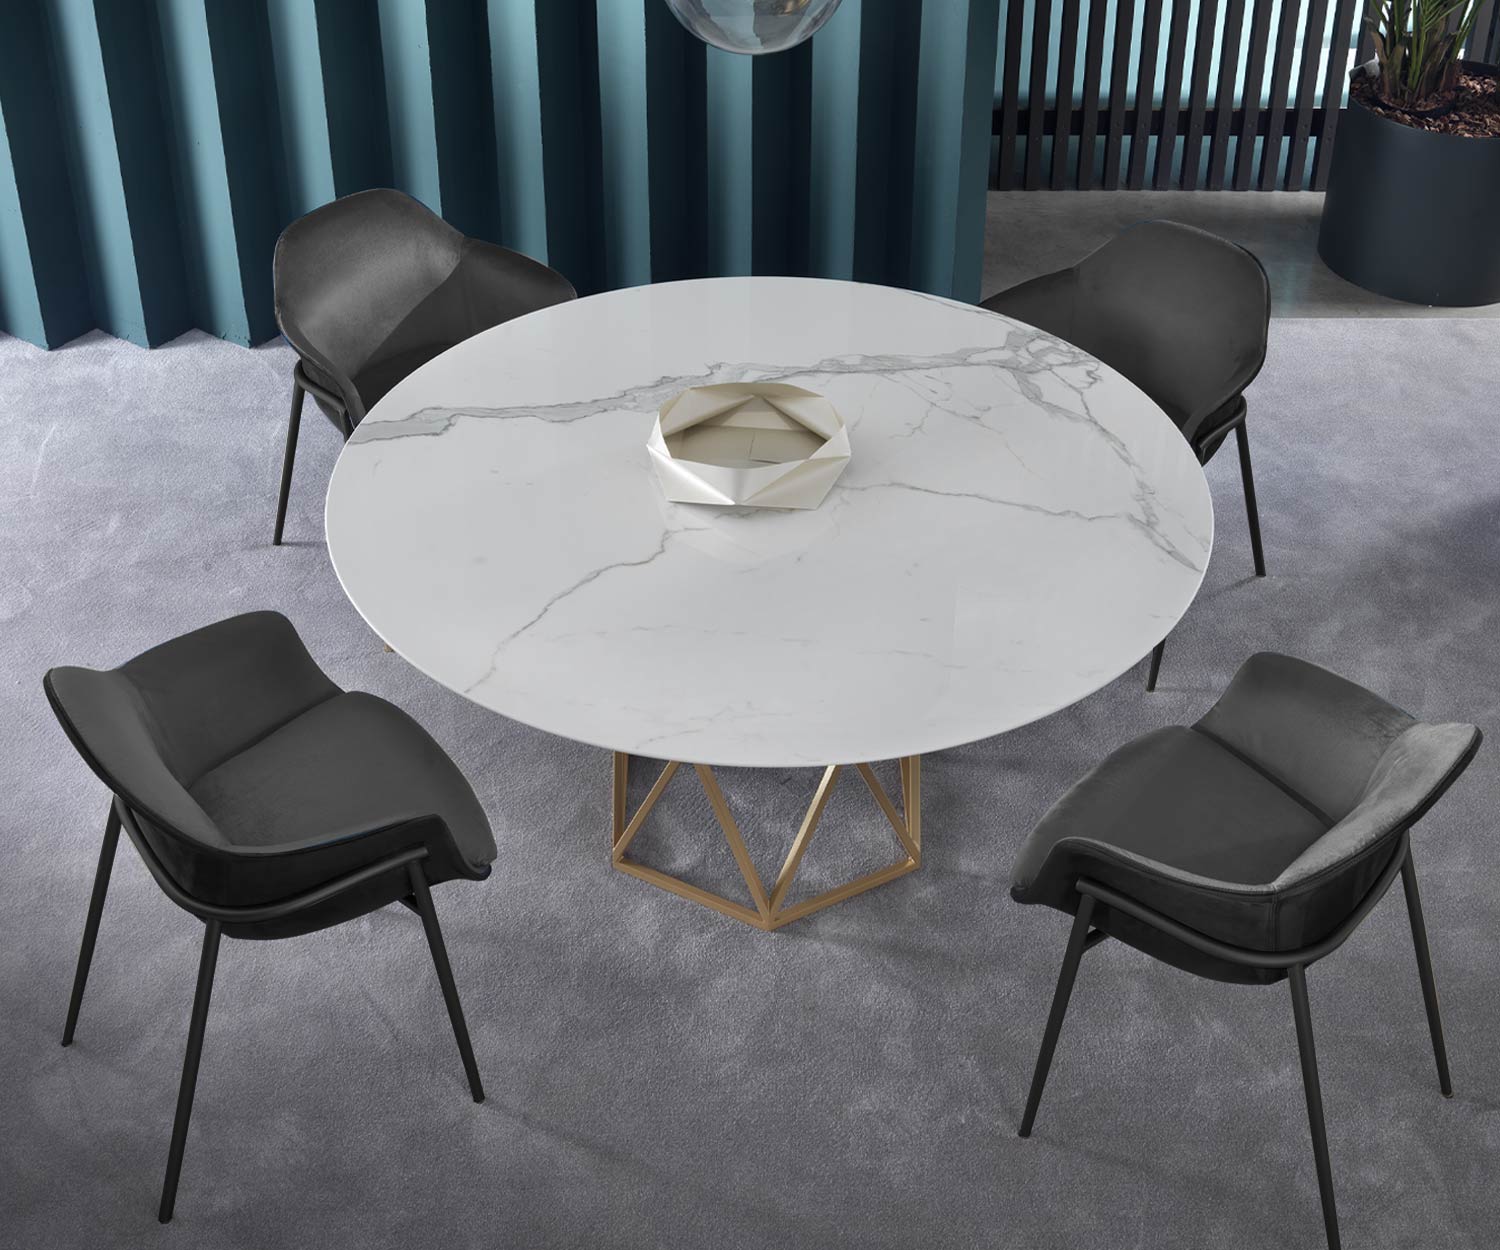 Gezellige fauteuil in de eetkamer met marmeren tafel opgesteld als een ensemble van 4